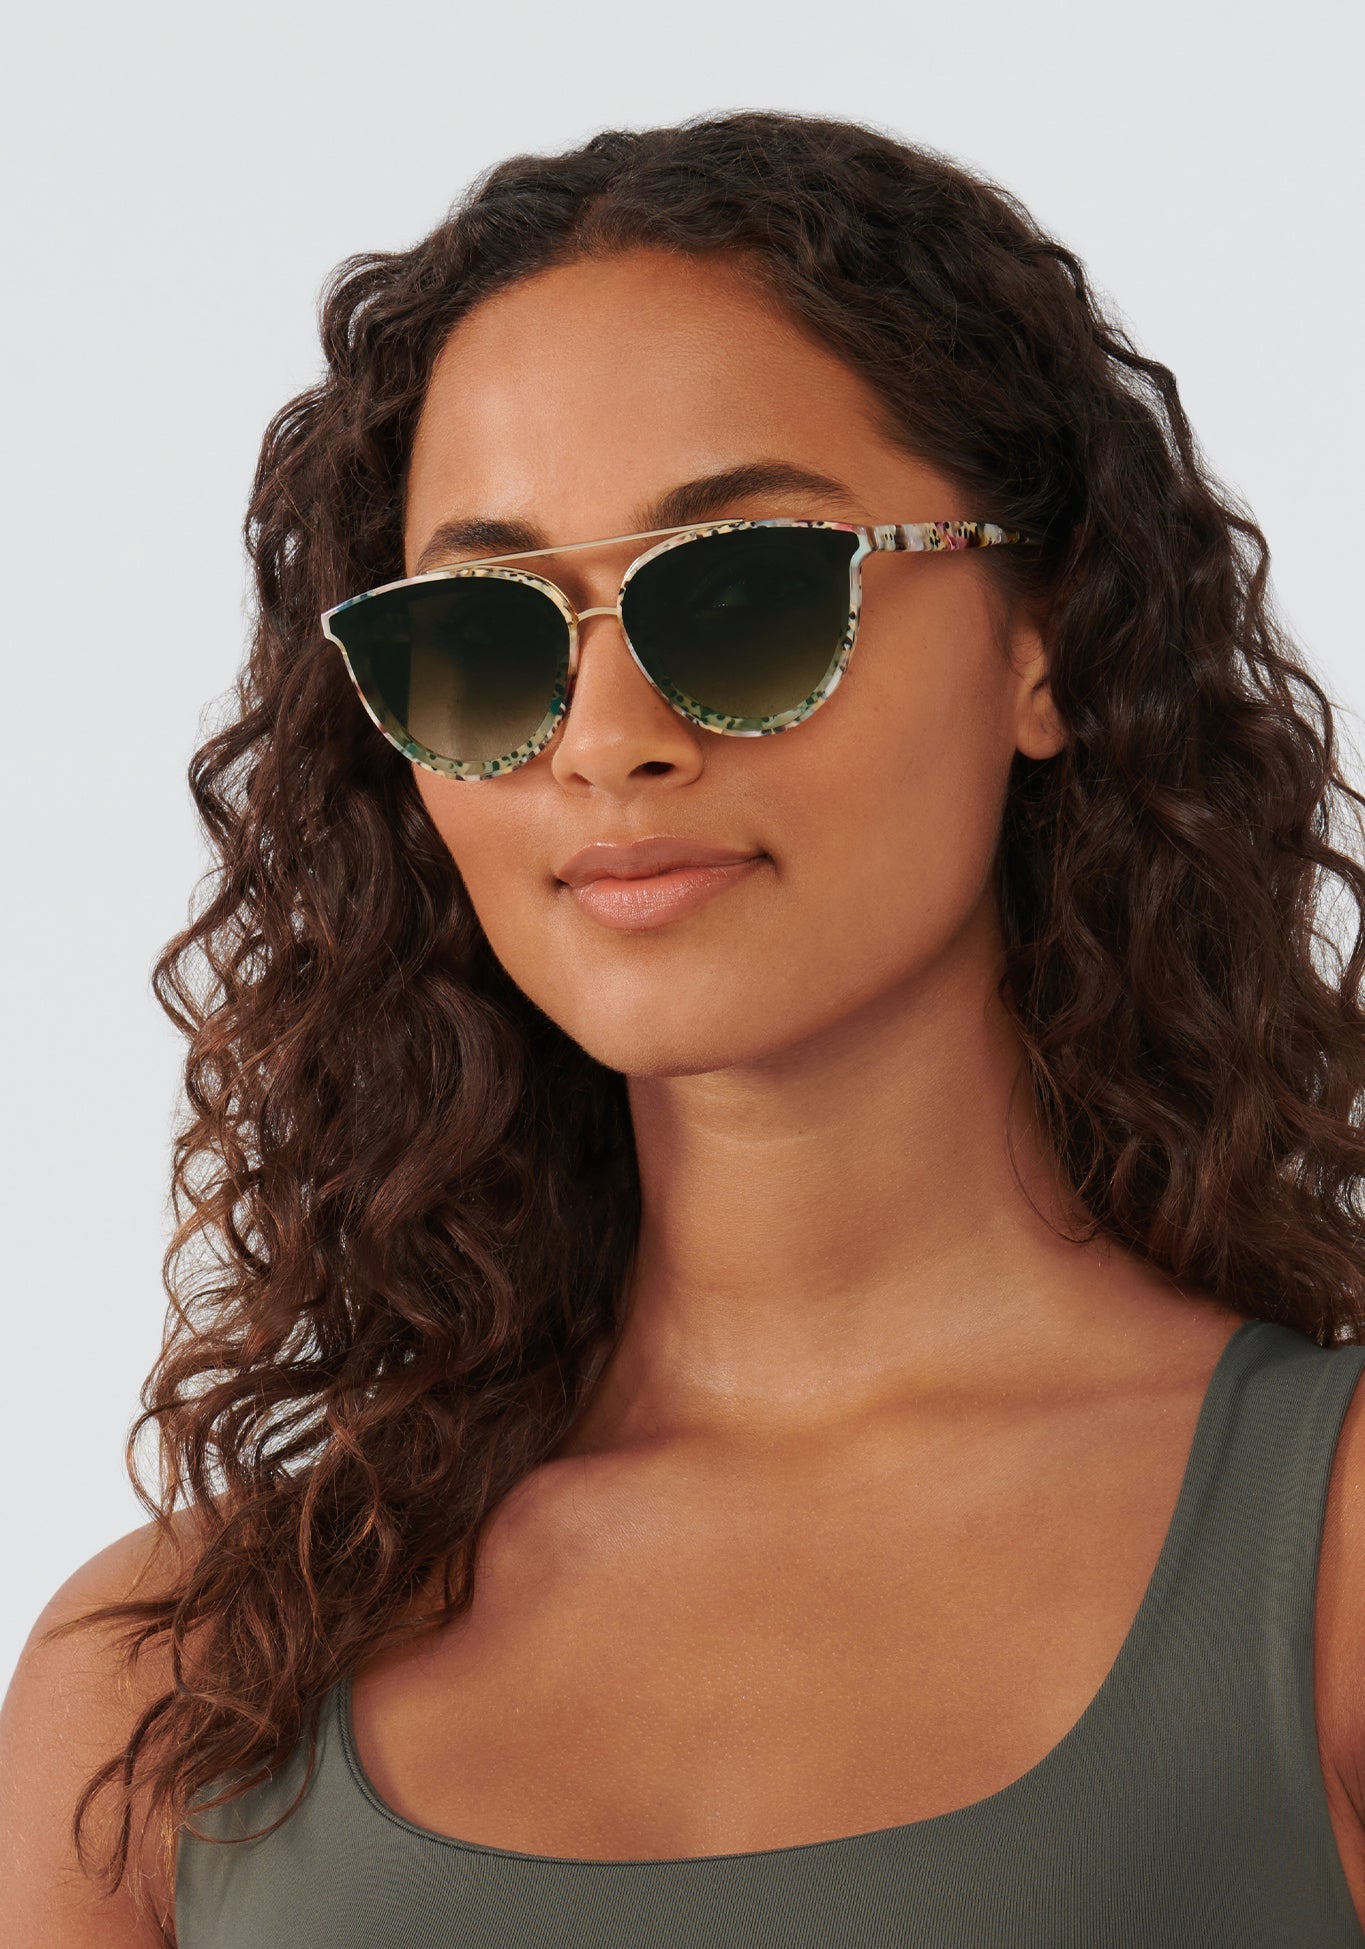 CLIO NYLON | Poppy Handcrafted, Multicolored, Acetate Sunglasses womens model | Model: Meli